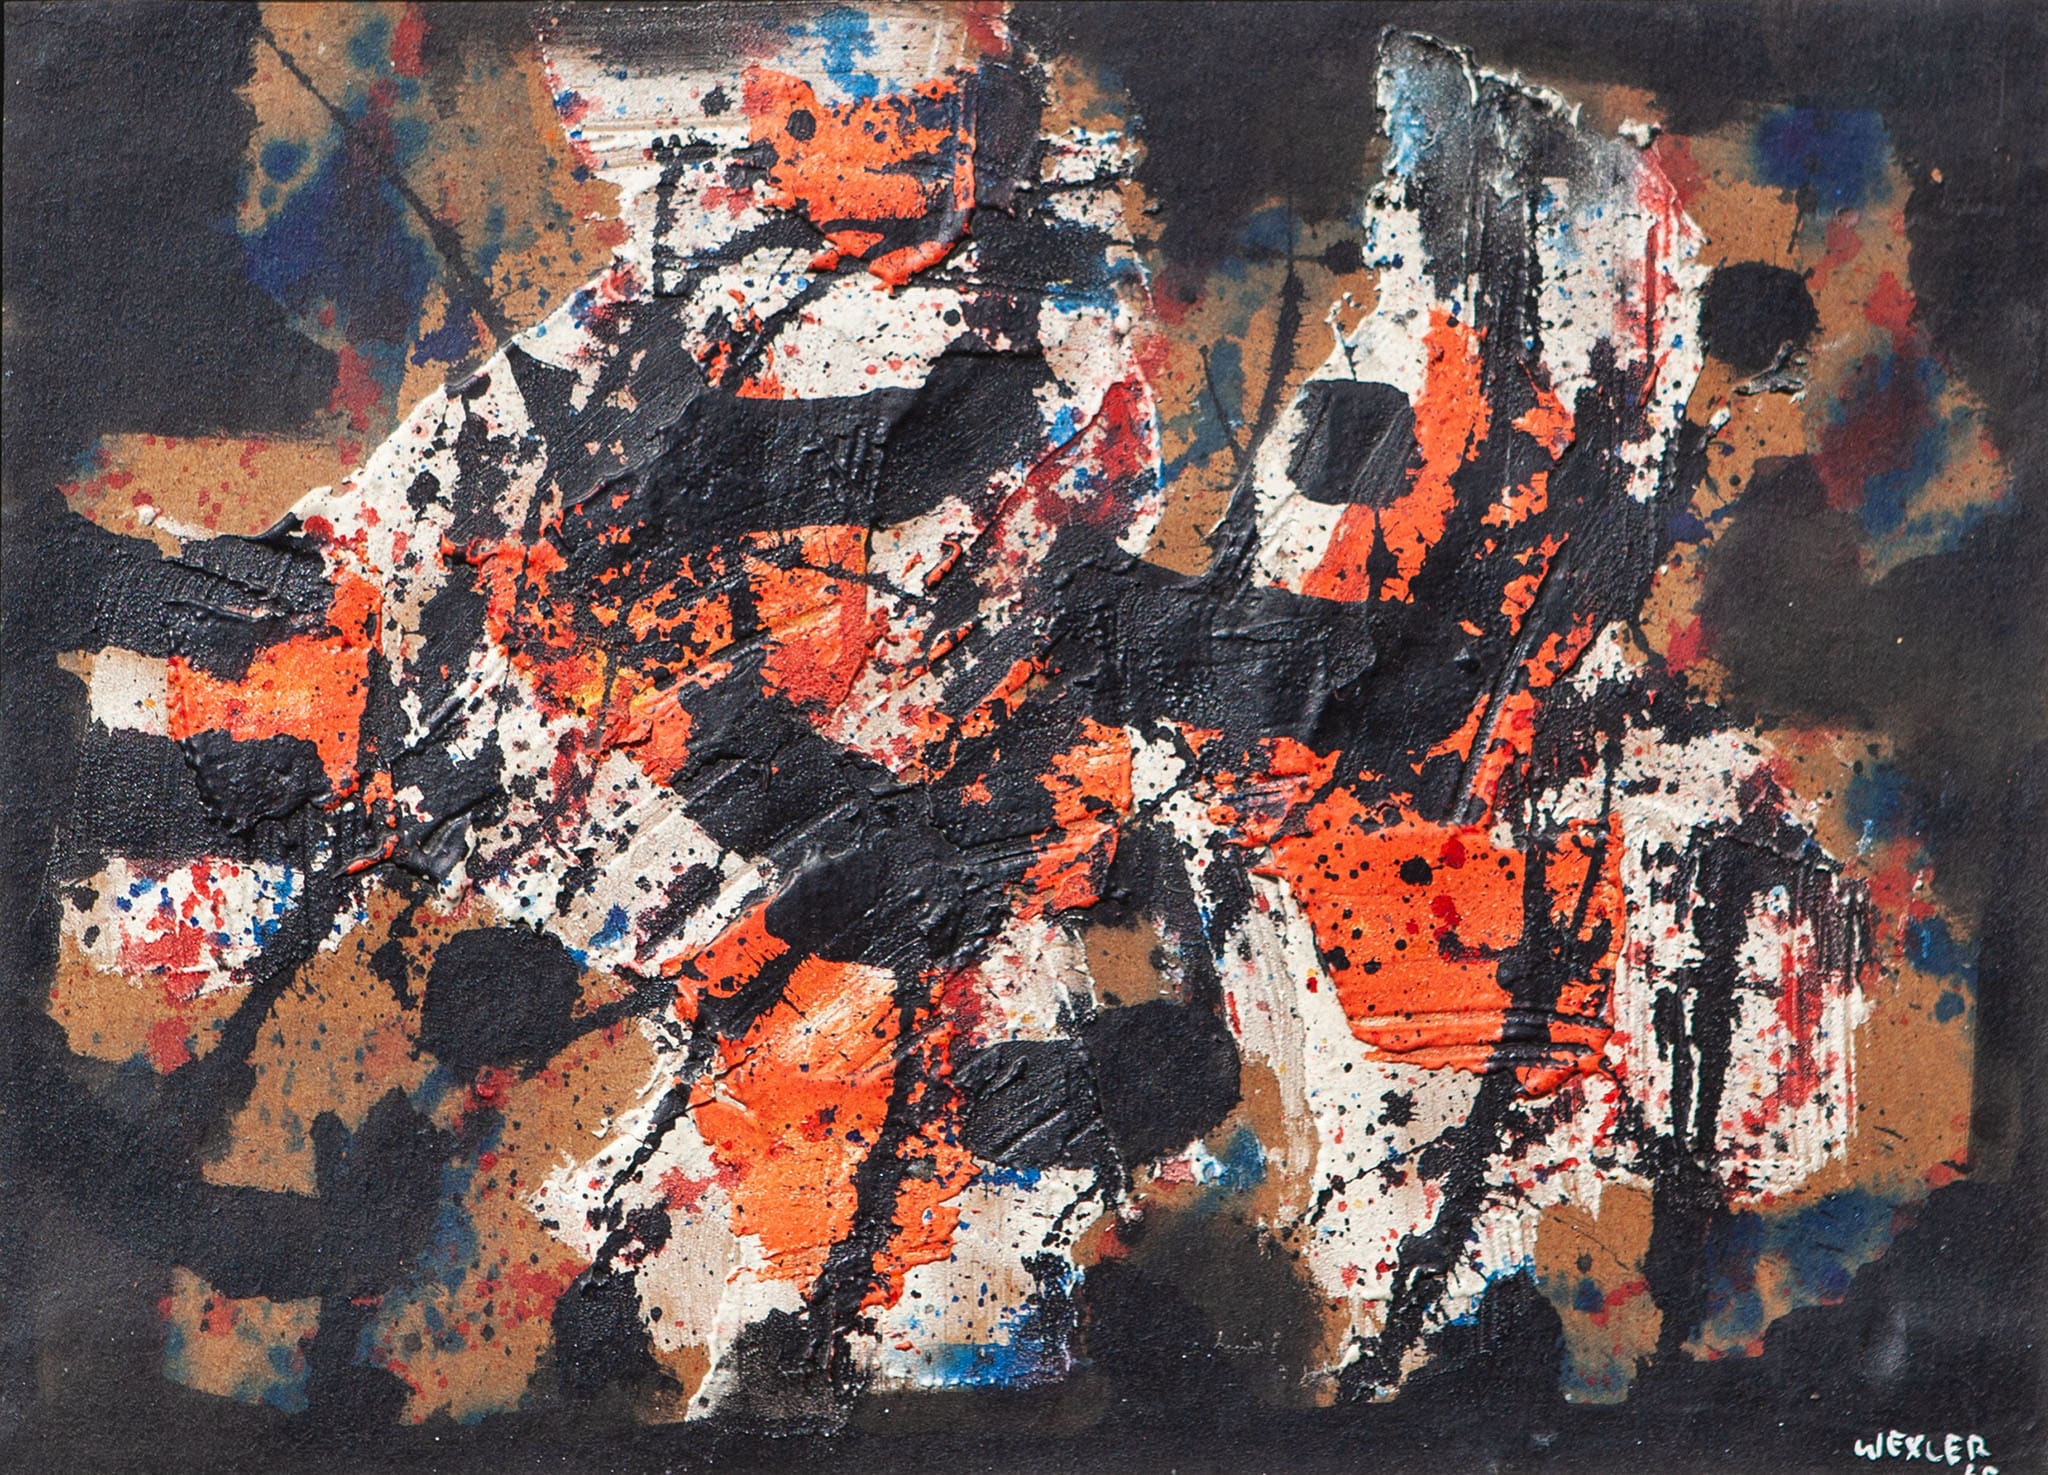 יעקב וכסלר, "ללא כותרת", 1965, שמן וקולאז' על בד, 36x50 ס"מ